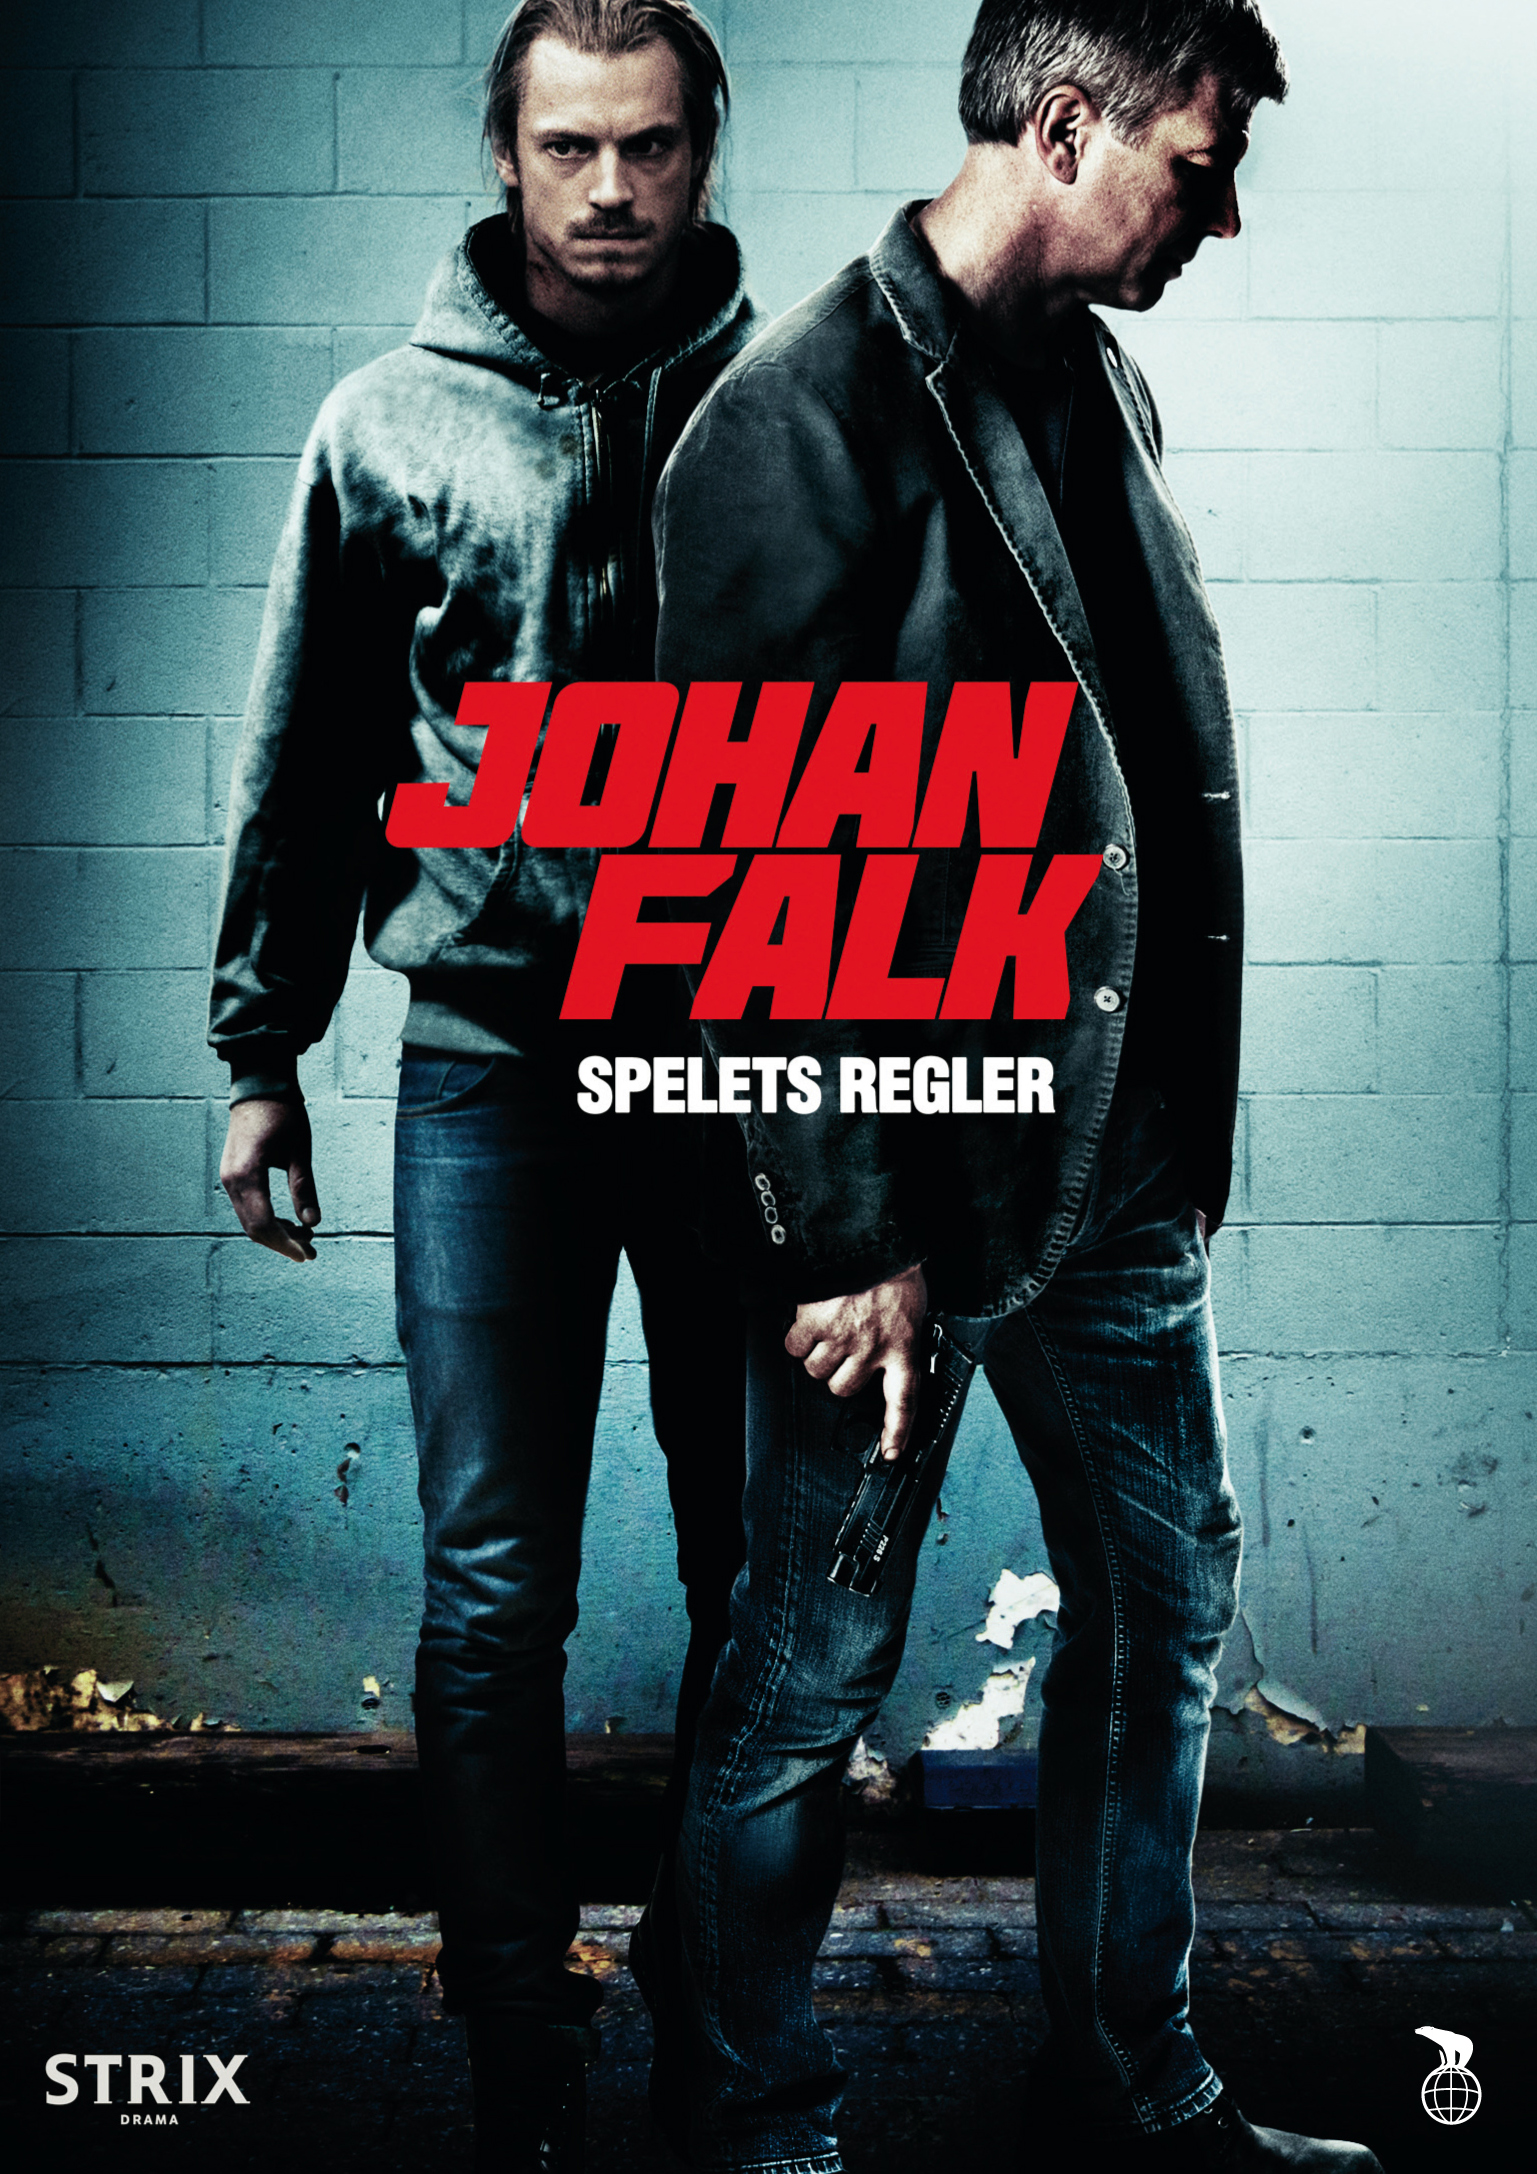 Johan Falk - Spelregels (Spelets Regler) (2012) 1080p 95min